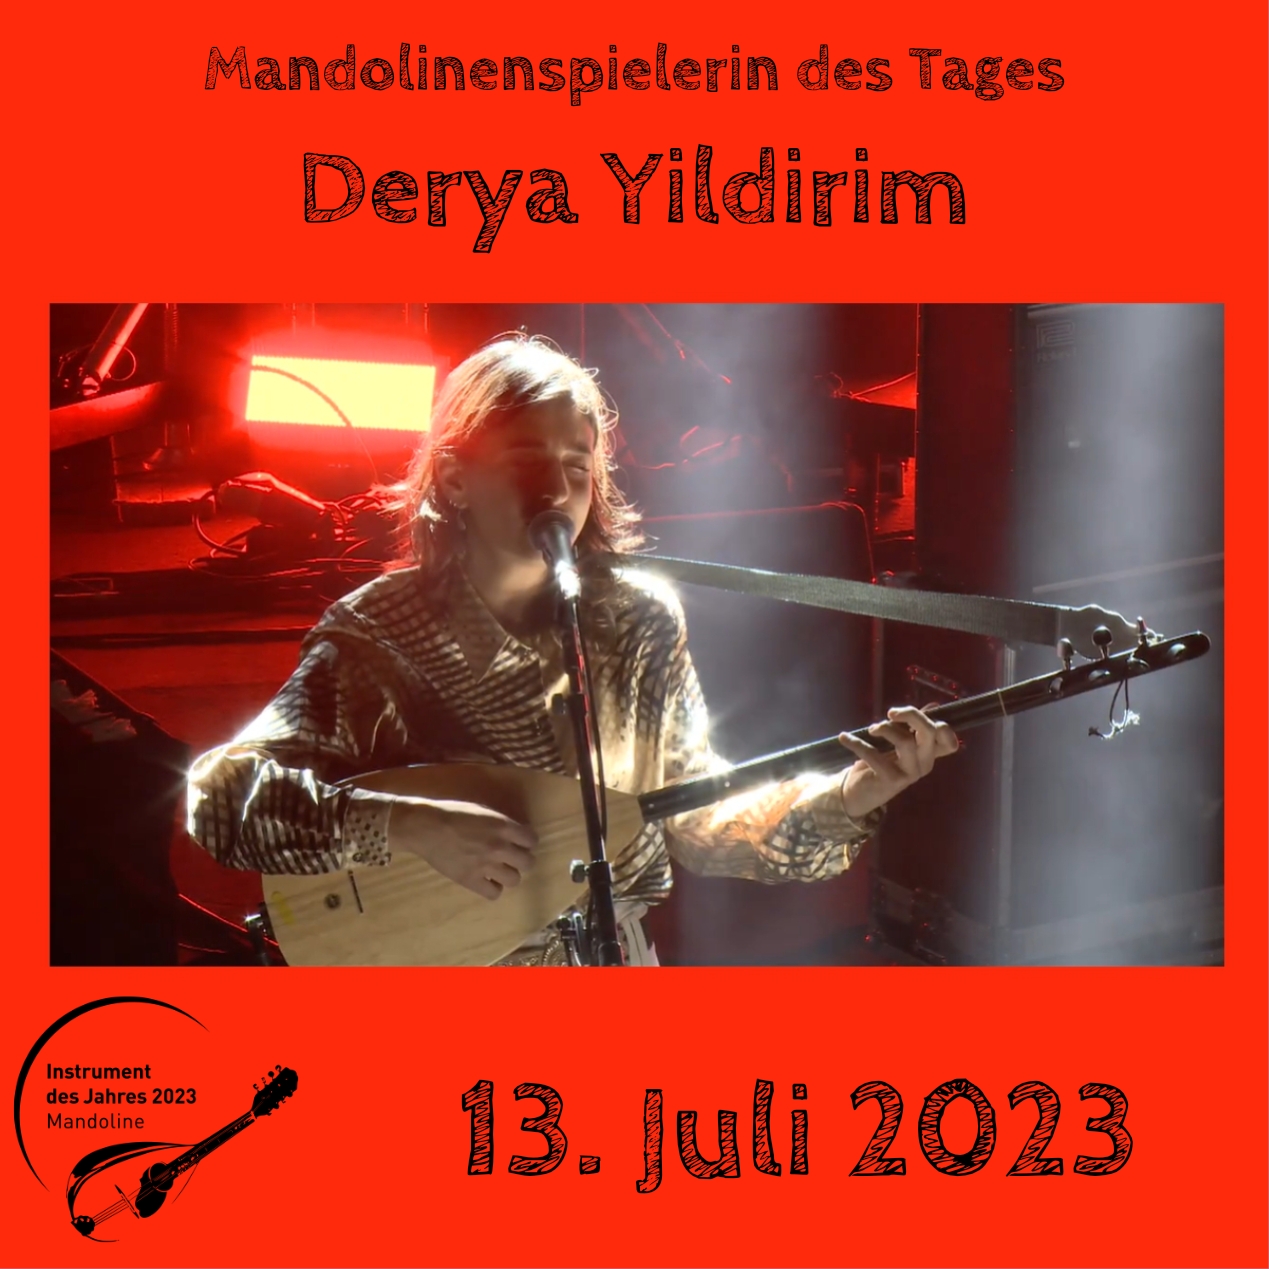 13. Juli - Derya Yildirim Baglama Mandoline Instrument des Jahres 2023 Mandolinenspieler Mandolinenspielerin des Tages